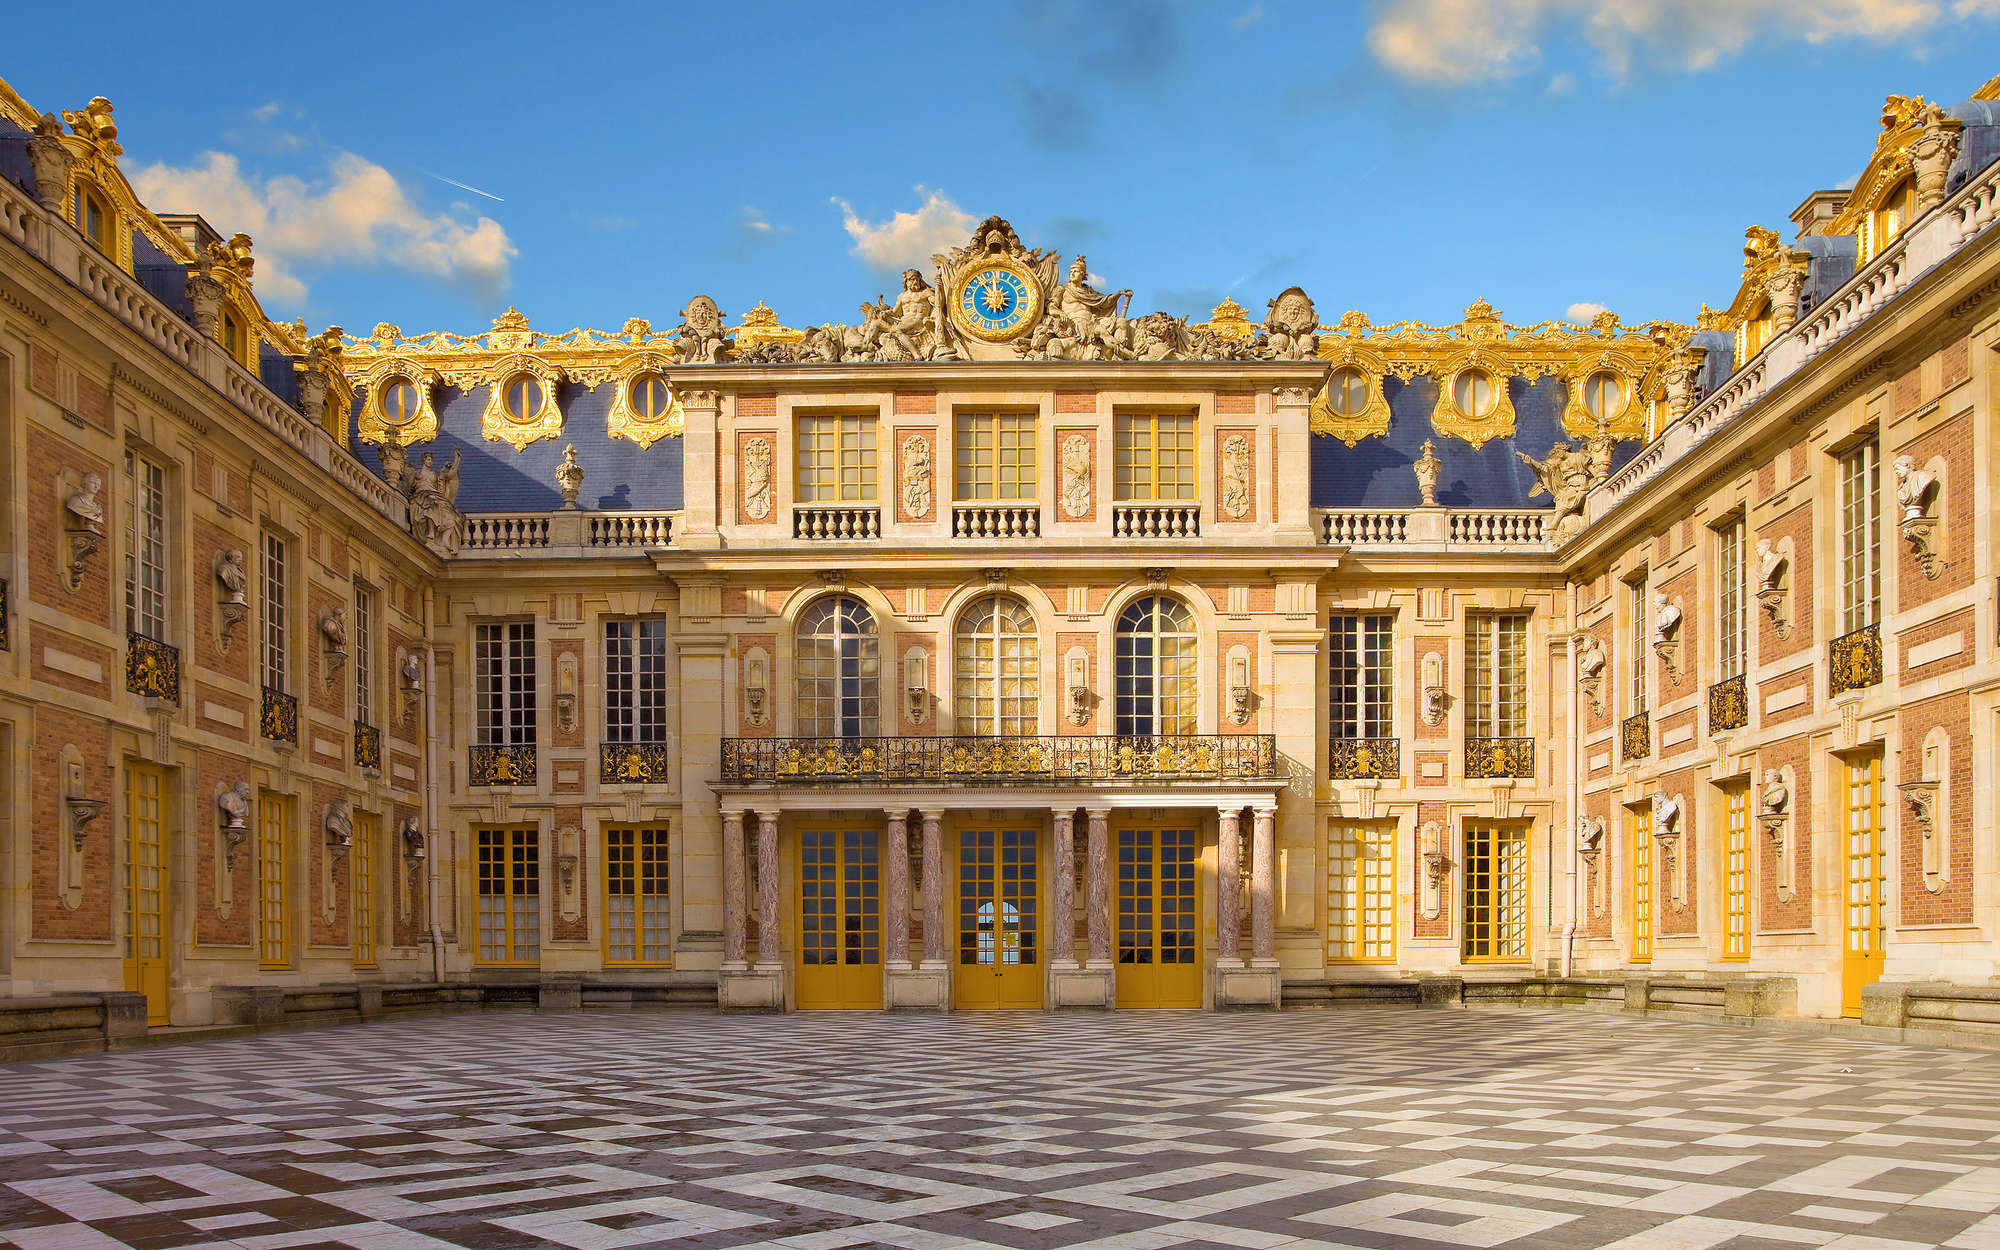             Baroque Wallpaper Palace of Versailles - Matt Smooth Non-woven
        